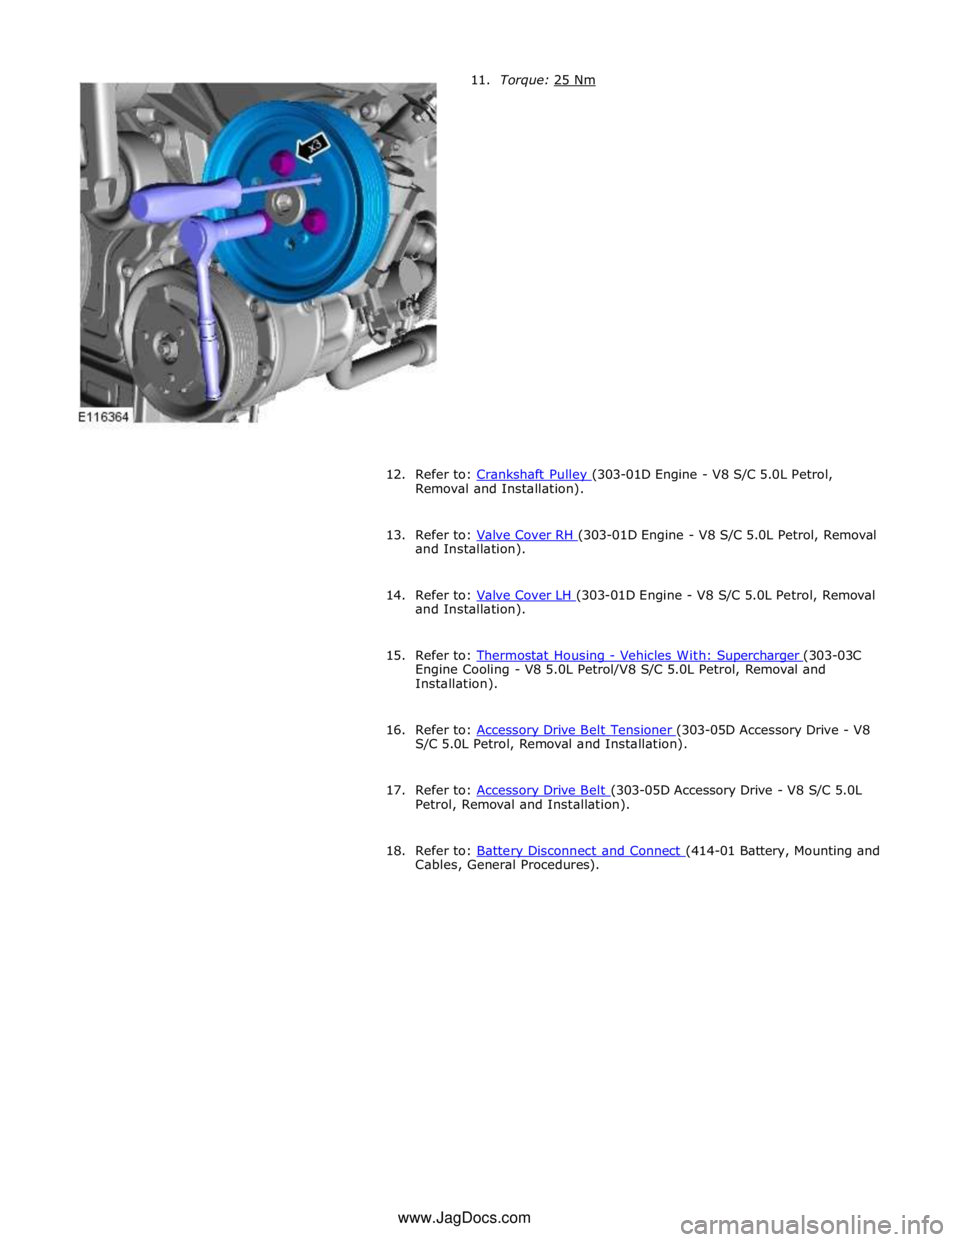 JAGUAR XFR 2010 1.G Workshop Manual  
 
 
 
 
 
 
 
 
 
 
 
 
 
 
 
 
 
 
 
12.  
Refer to: Crankshaft Pulley (303-01D Engine - V8 S/C 5.0L Petrol, Removal and Installation). 
 
13. Refer to: Valve Cover RH (303-01D Engine - V8 S/C 5.0L